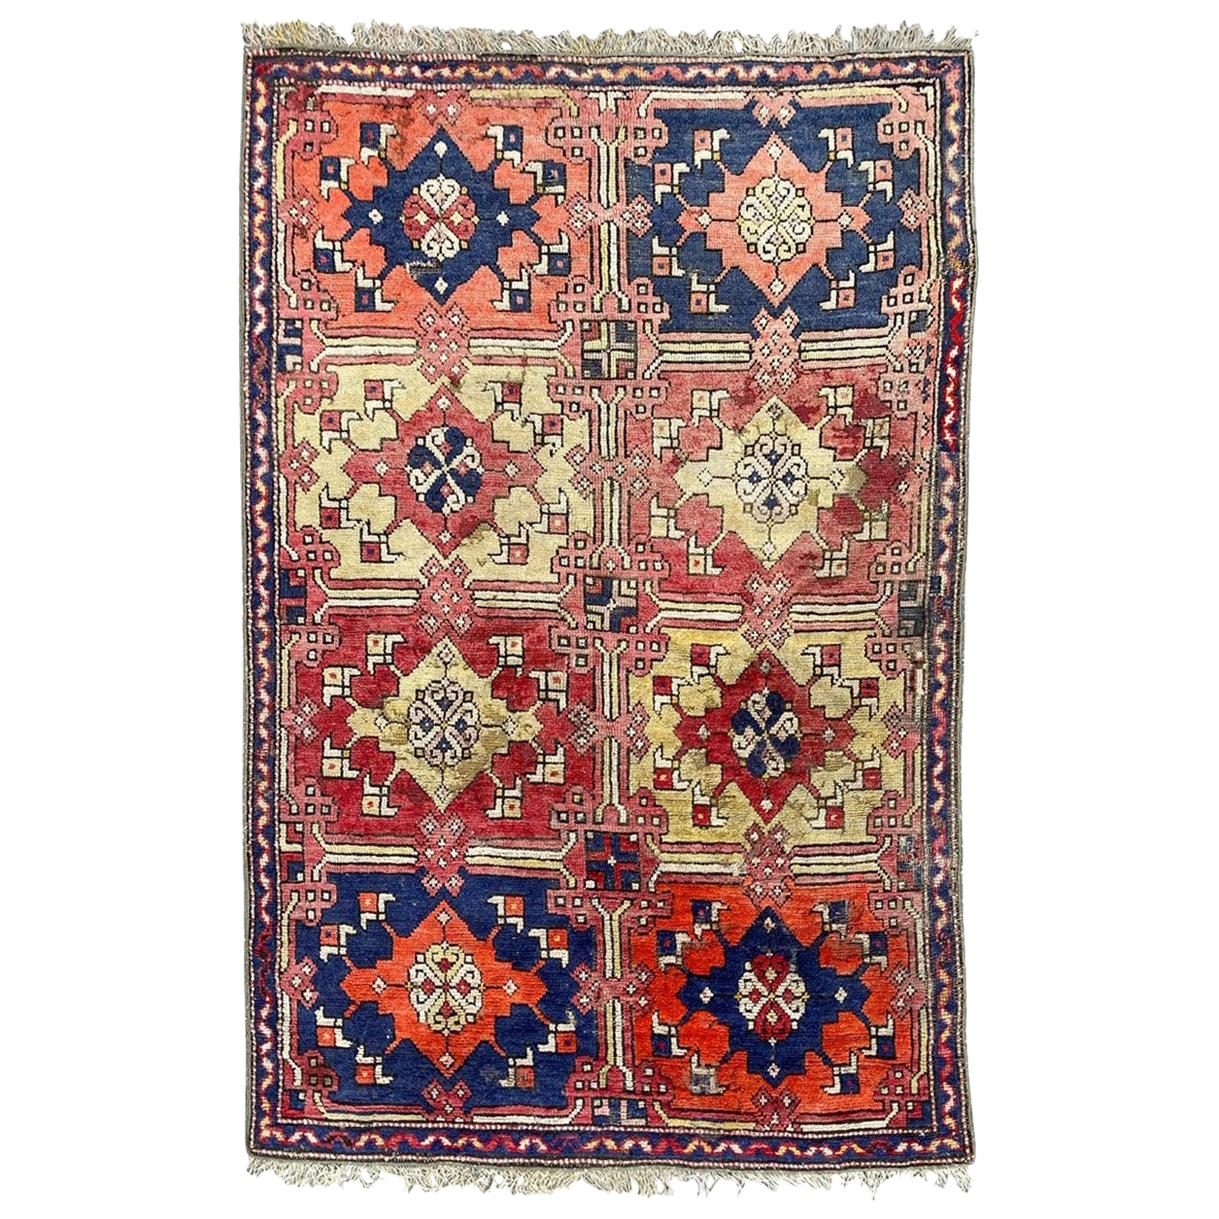 Joli tapis turc Smyrne du début du 20ème siècle de Bobyrug's